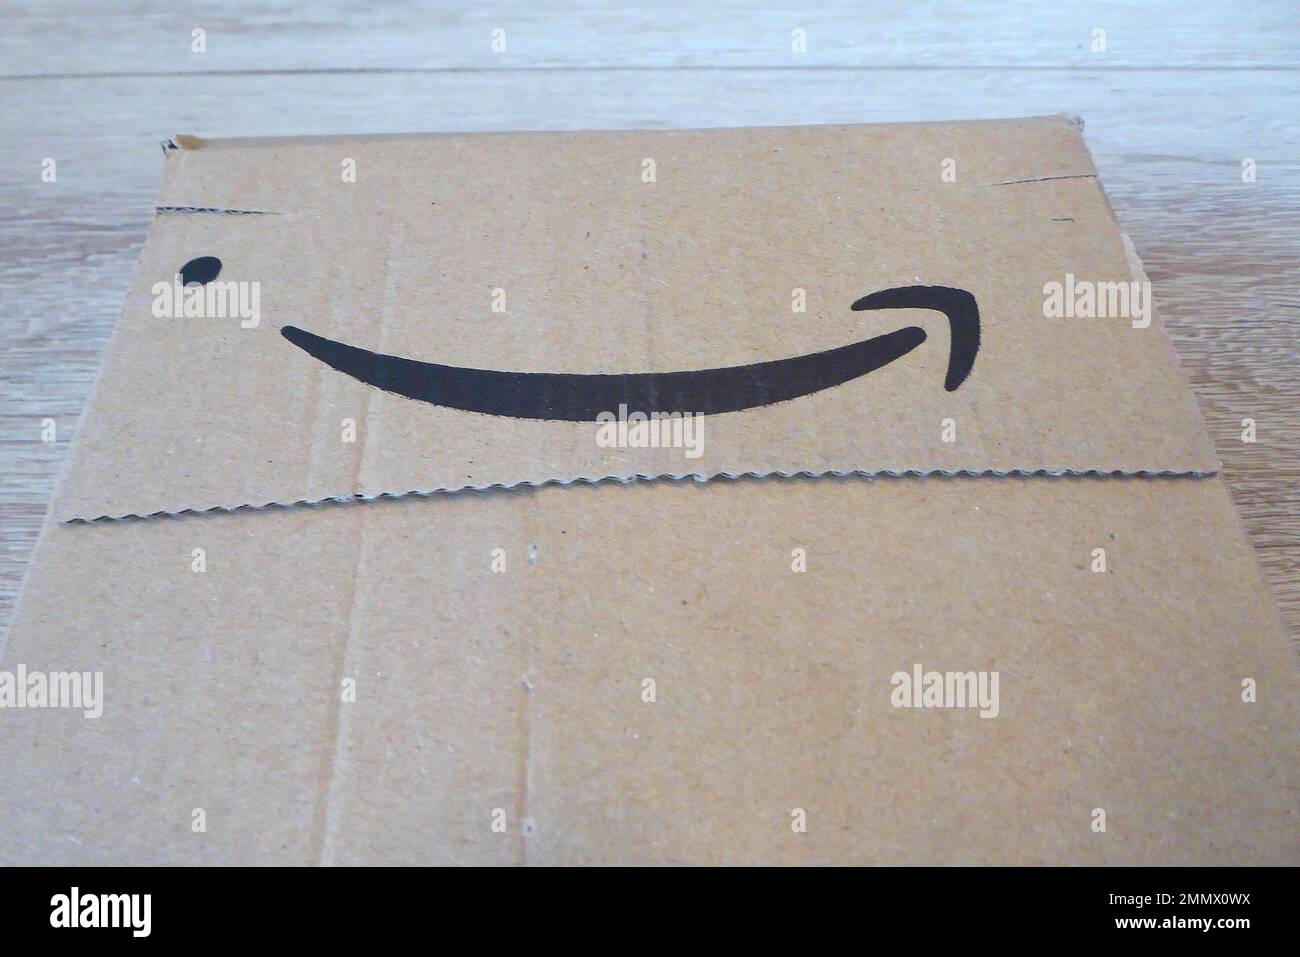 Amazon / Paket / Karton Foto Stock